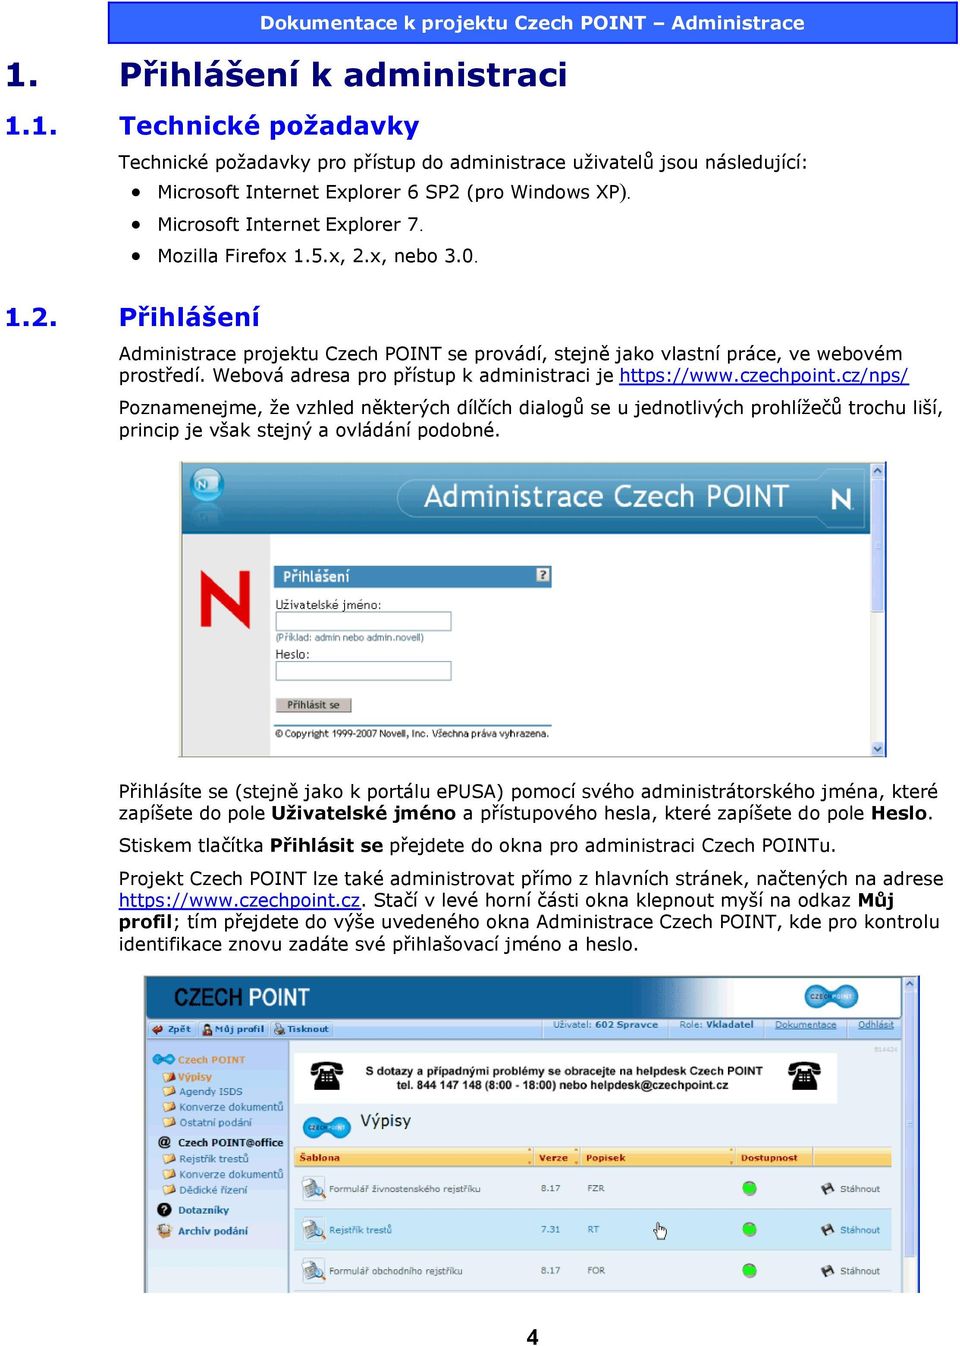 Webová adresa pro přístup k administraci je https://www.czechpoint.